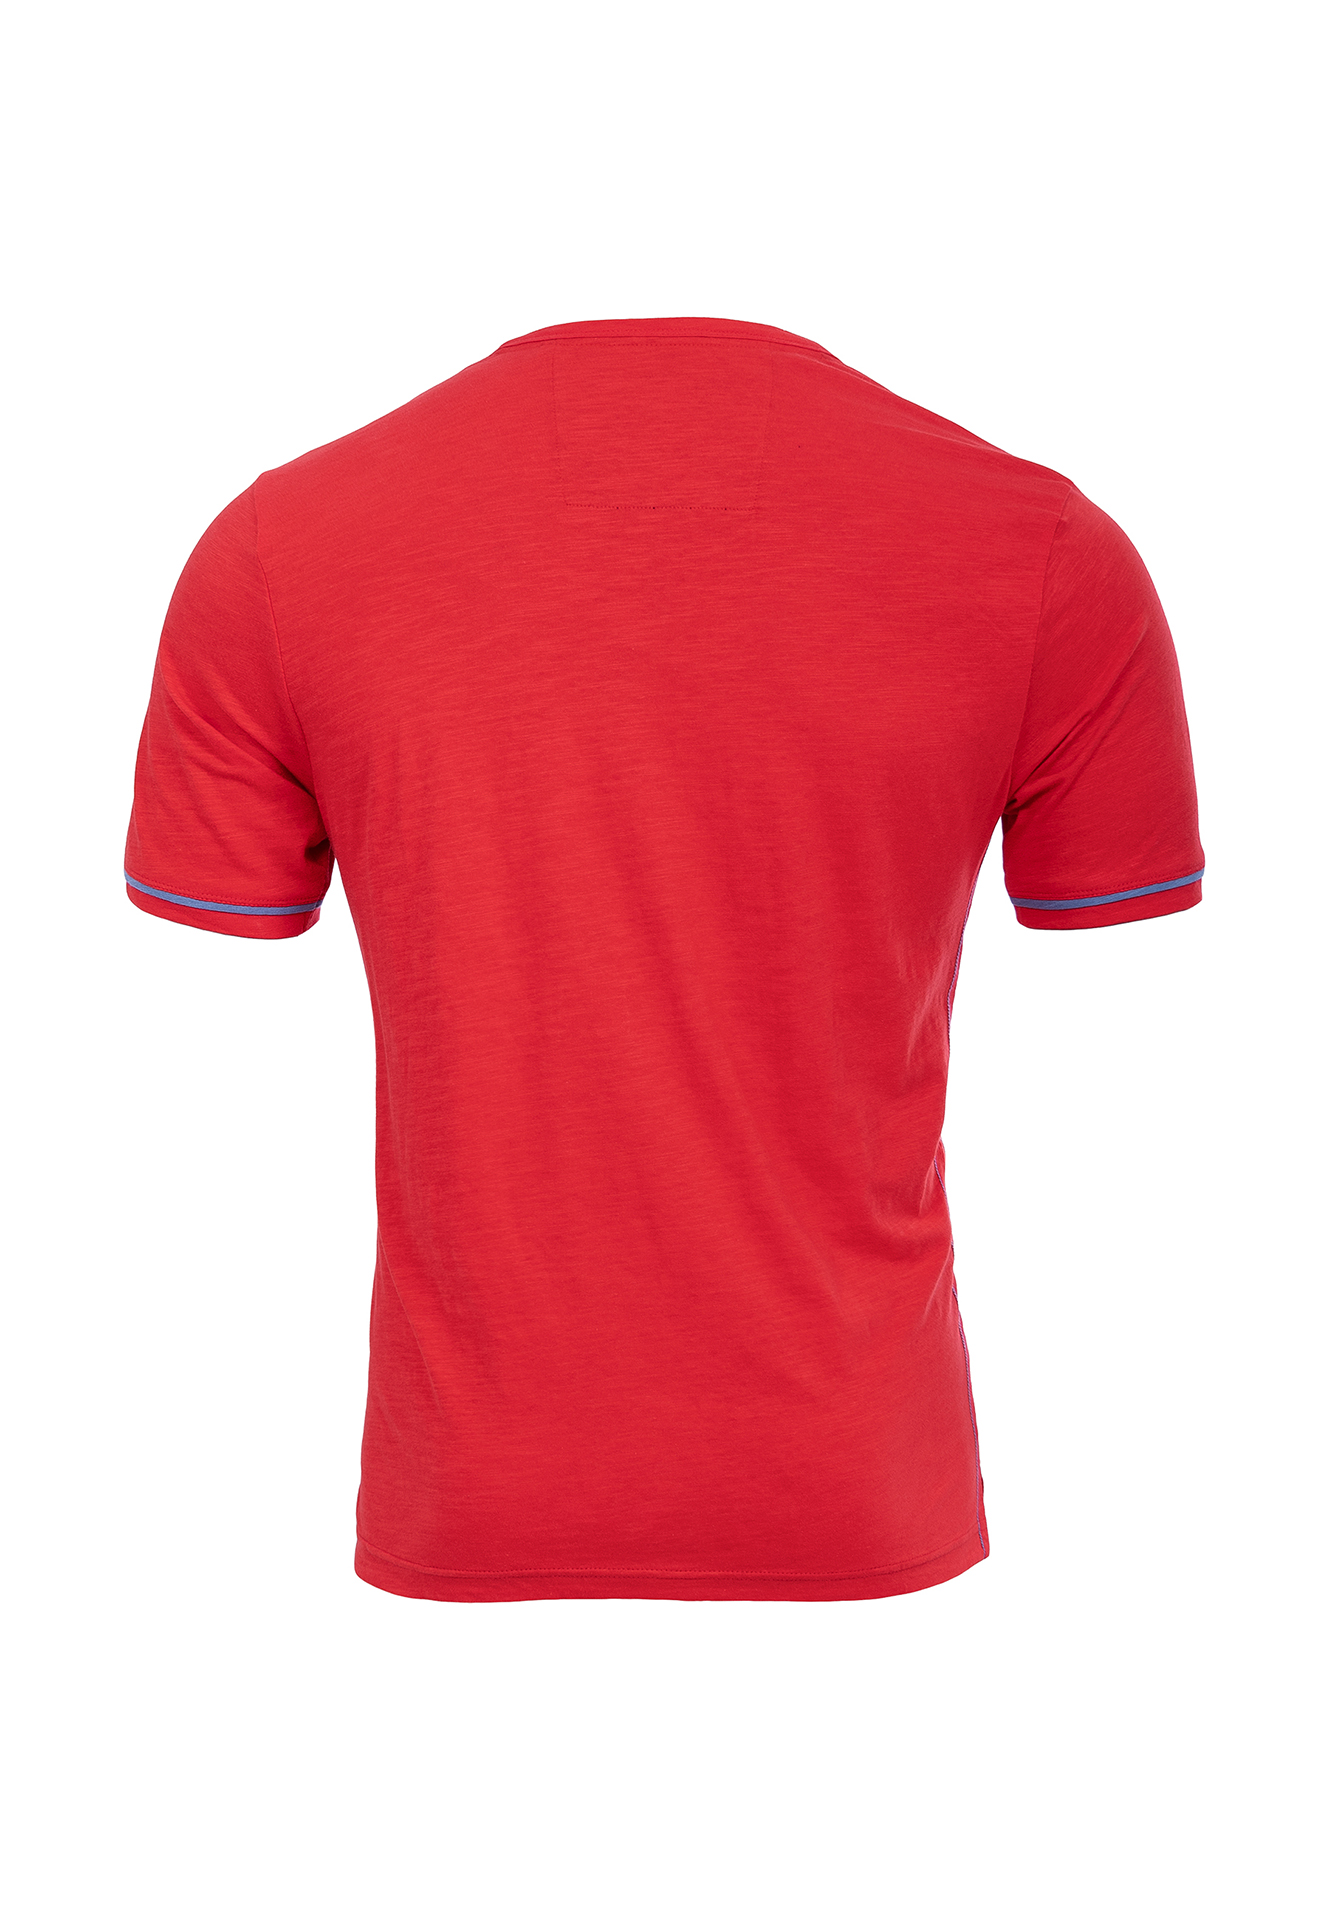 Questo Shirt Eugen racing red